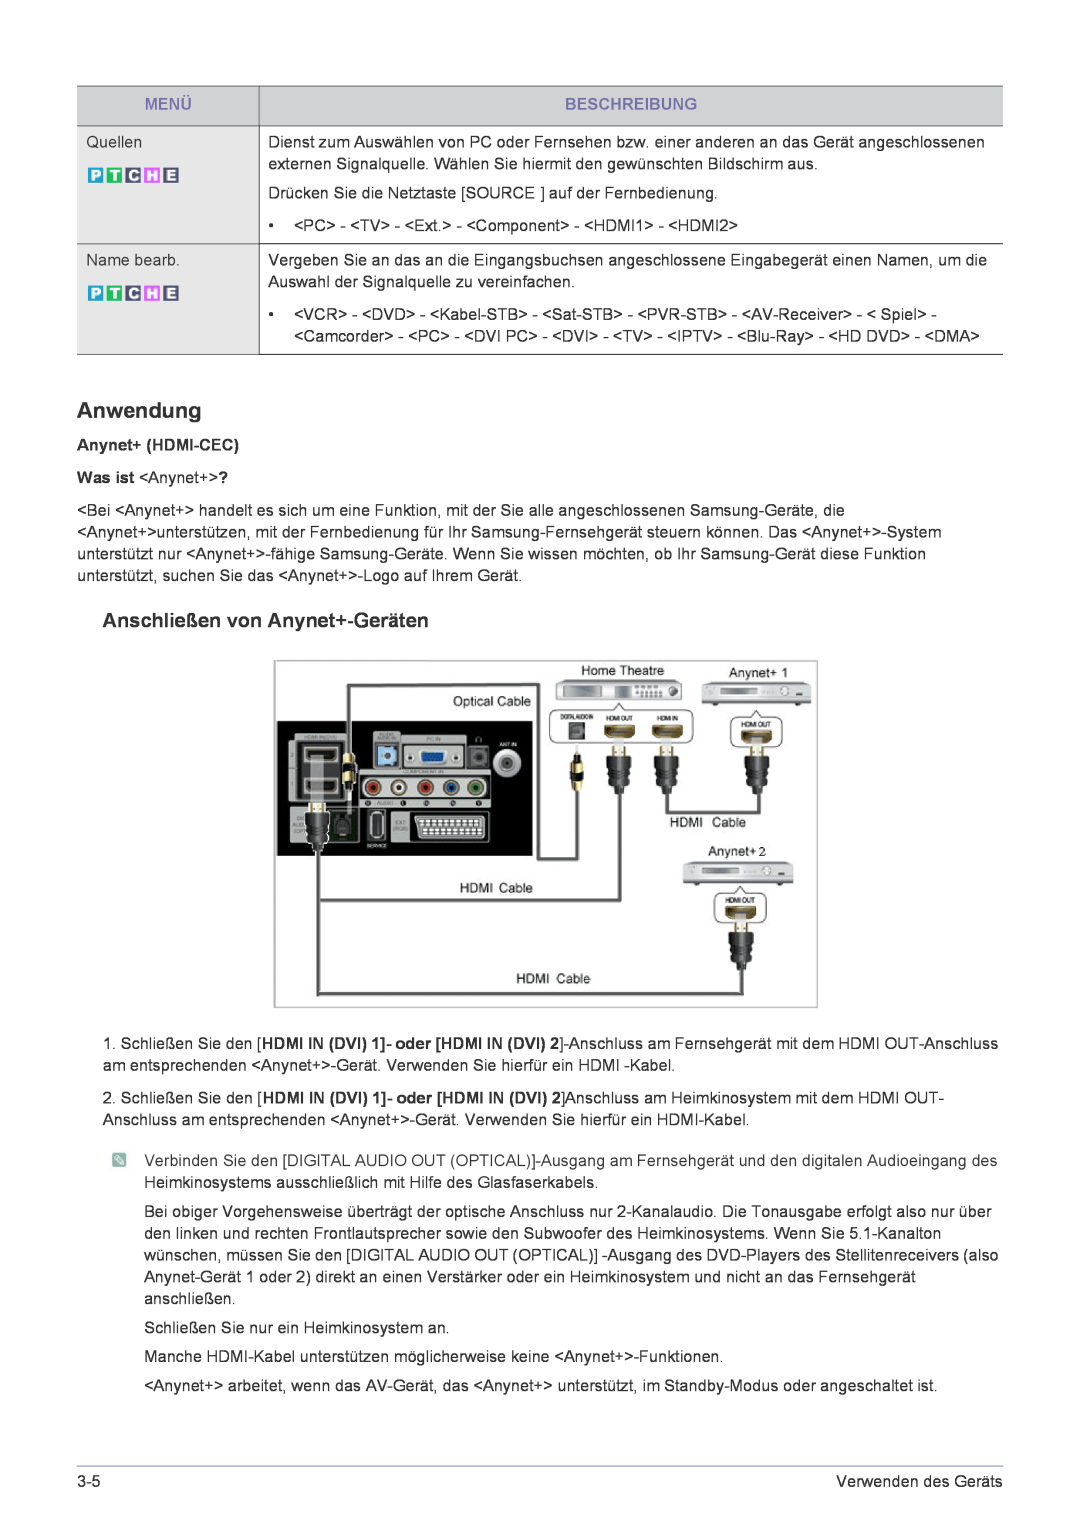 Samsung LS24EMLKF/EN manual Anwendung, Anschließen von Anynet+-Geräten, Menü, Beschreibung 